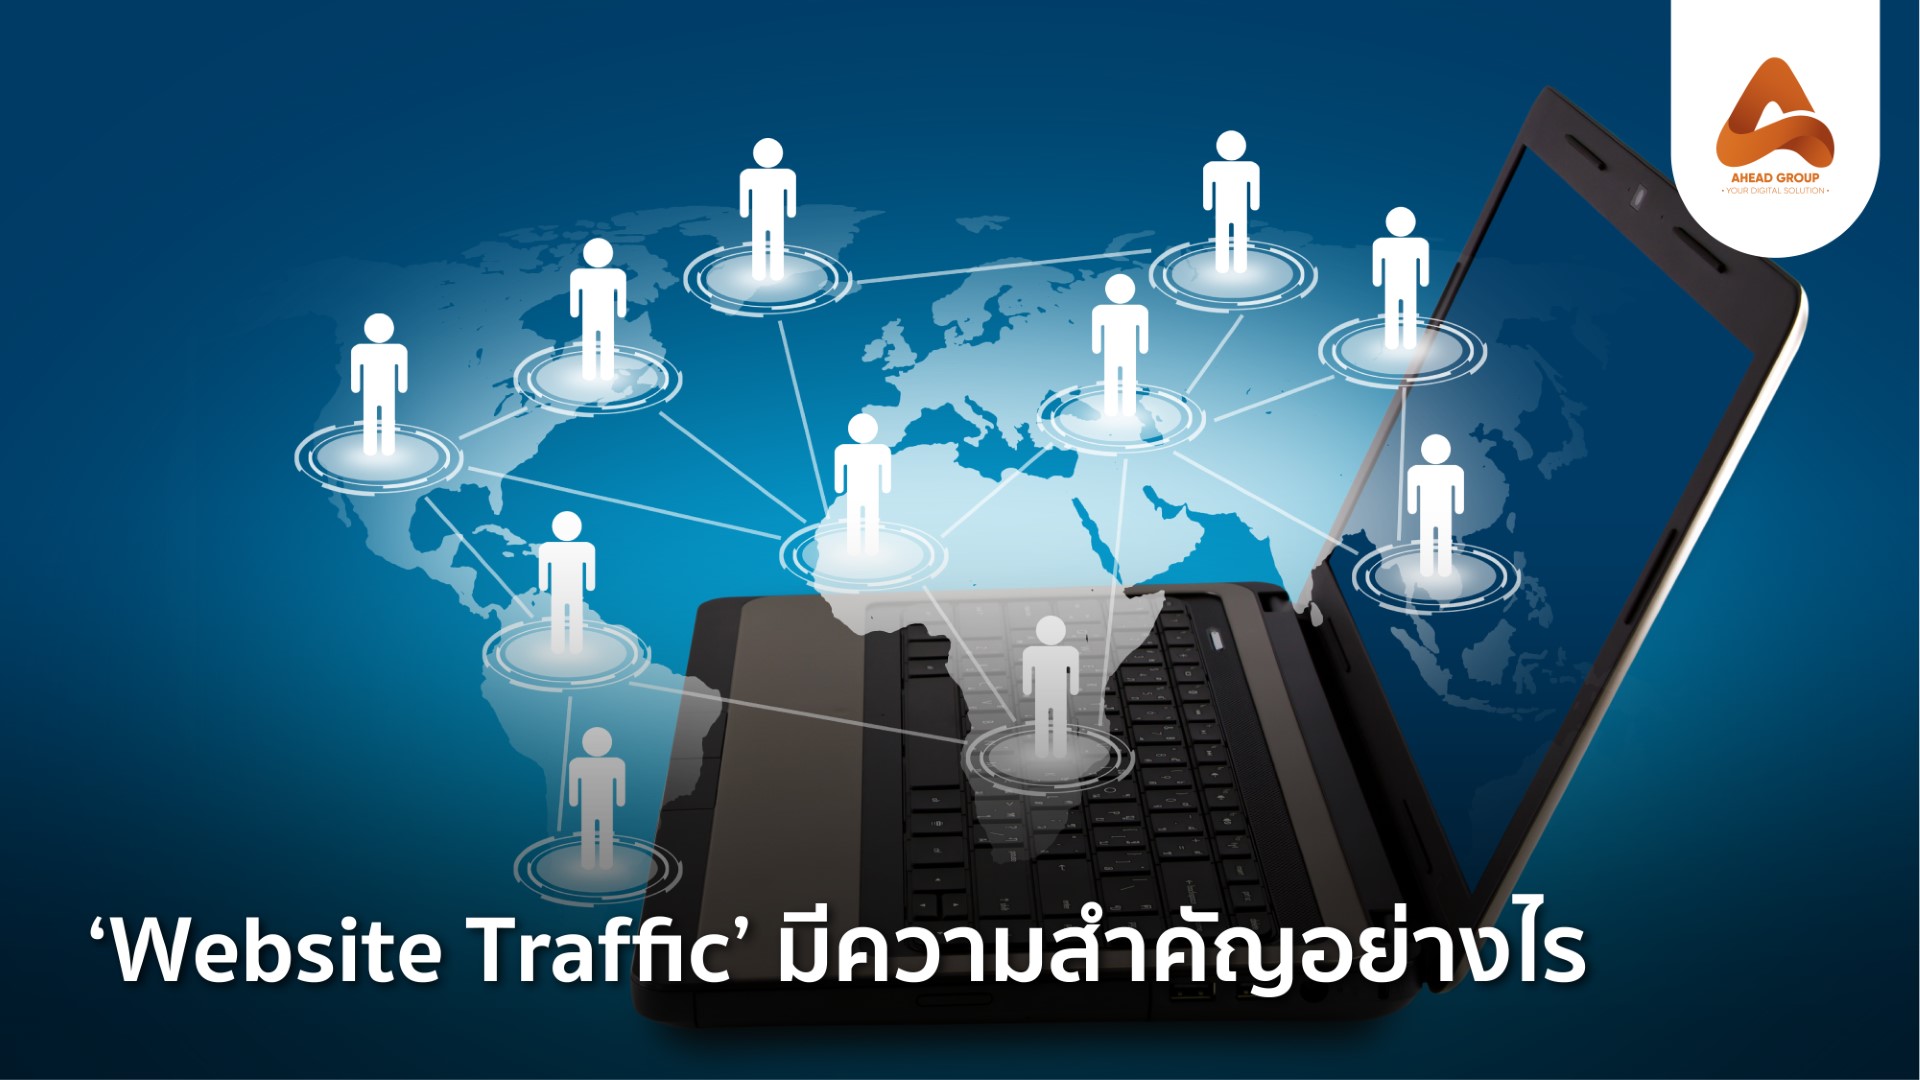 Website Traffic สำคัญยังไง มีเทคนิคอะไรช่วยเพิ่มยอด Traffic